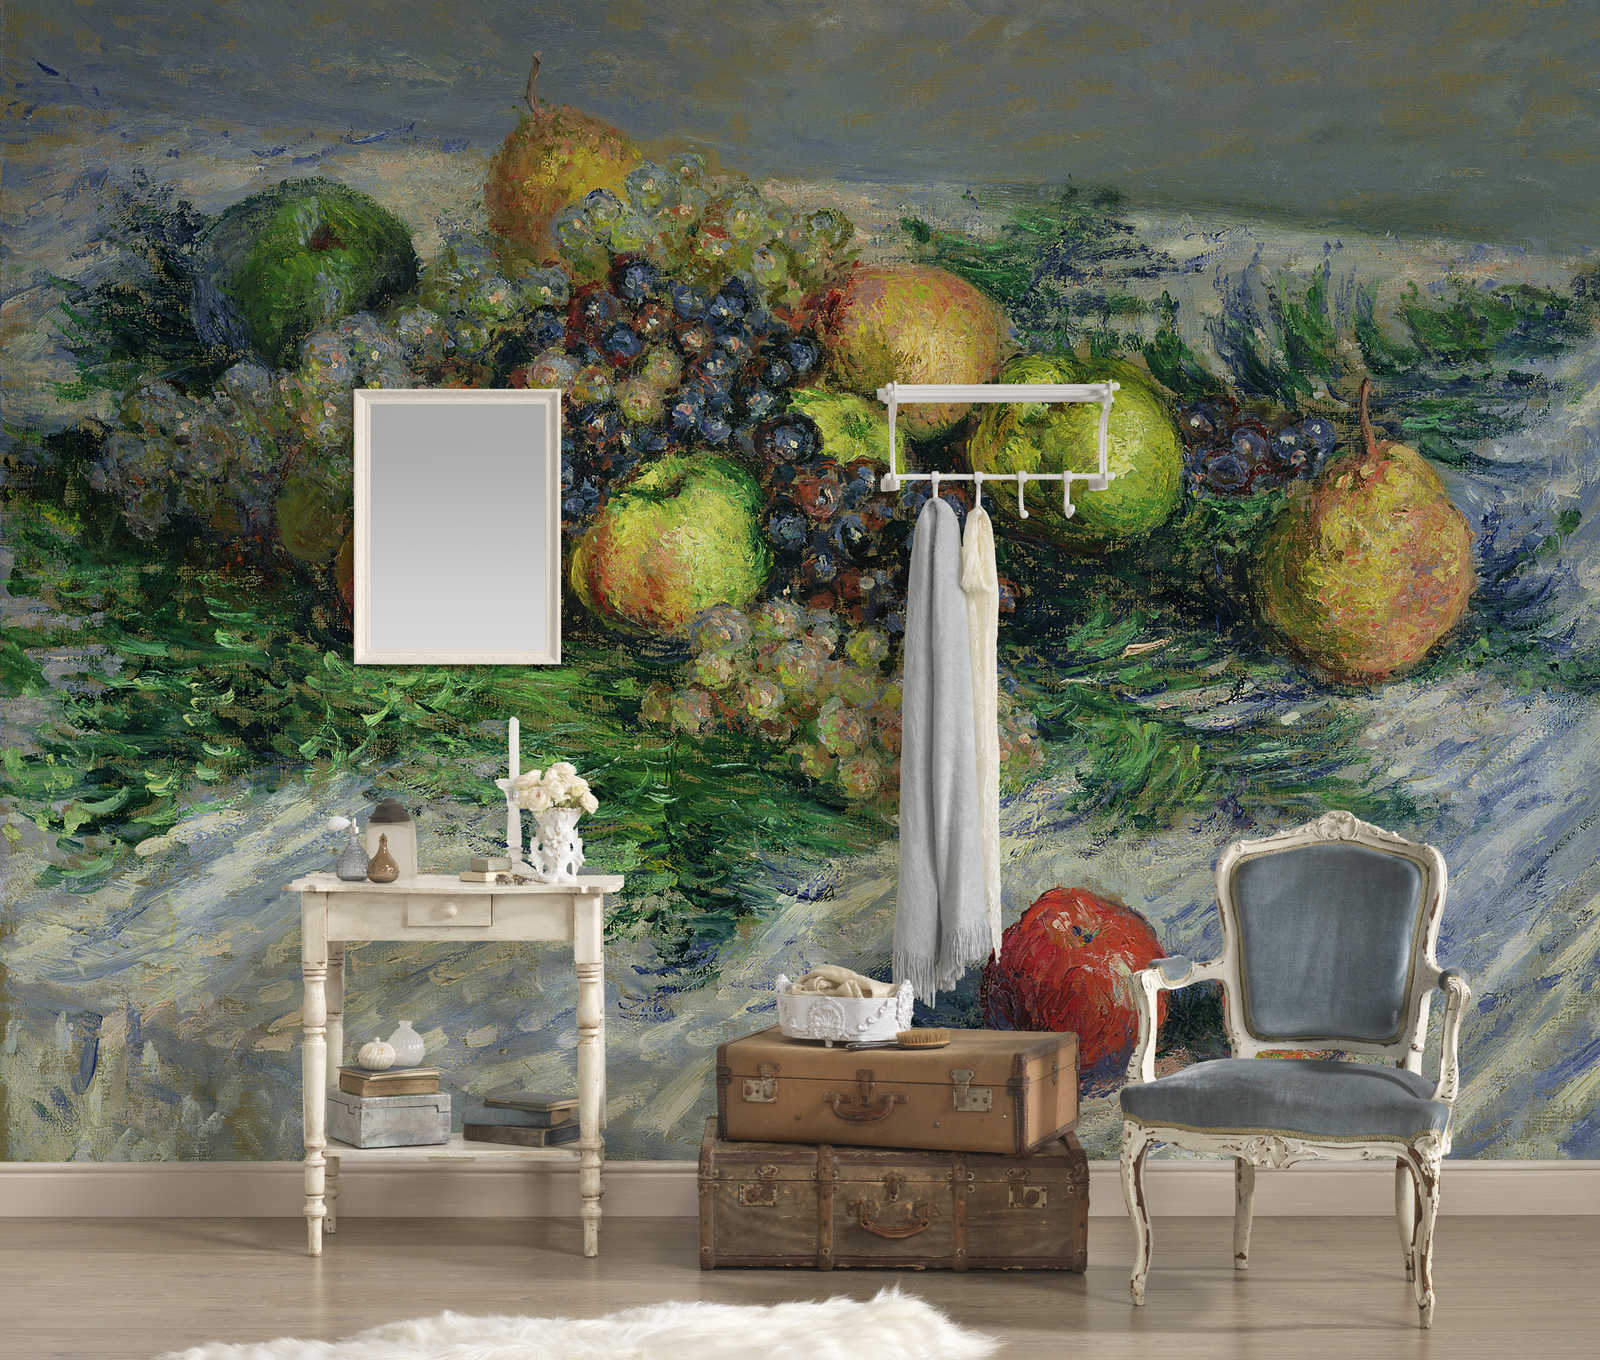             Papier peint panoramique "Nature morte aux poires et aux raisins" de Claude Monet
        